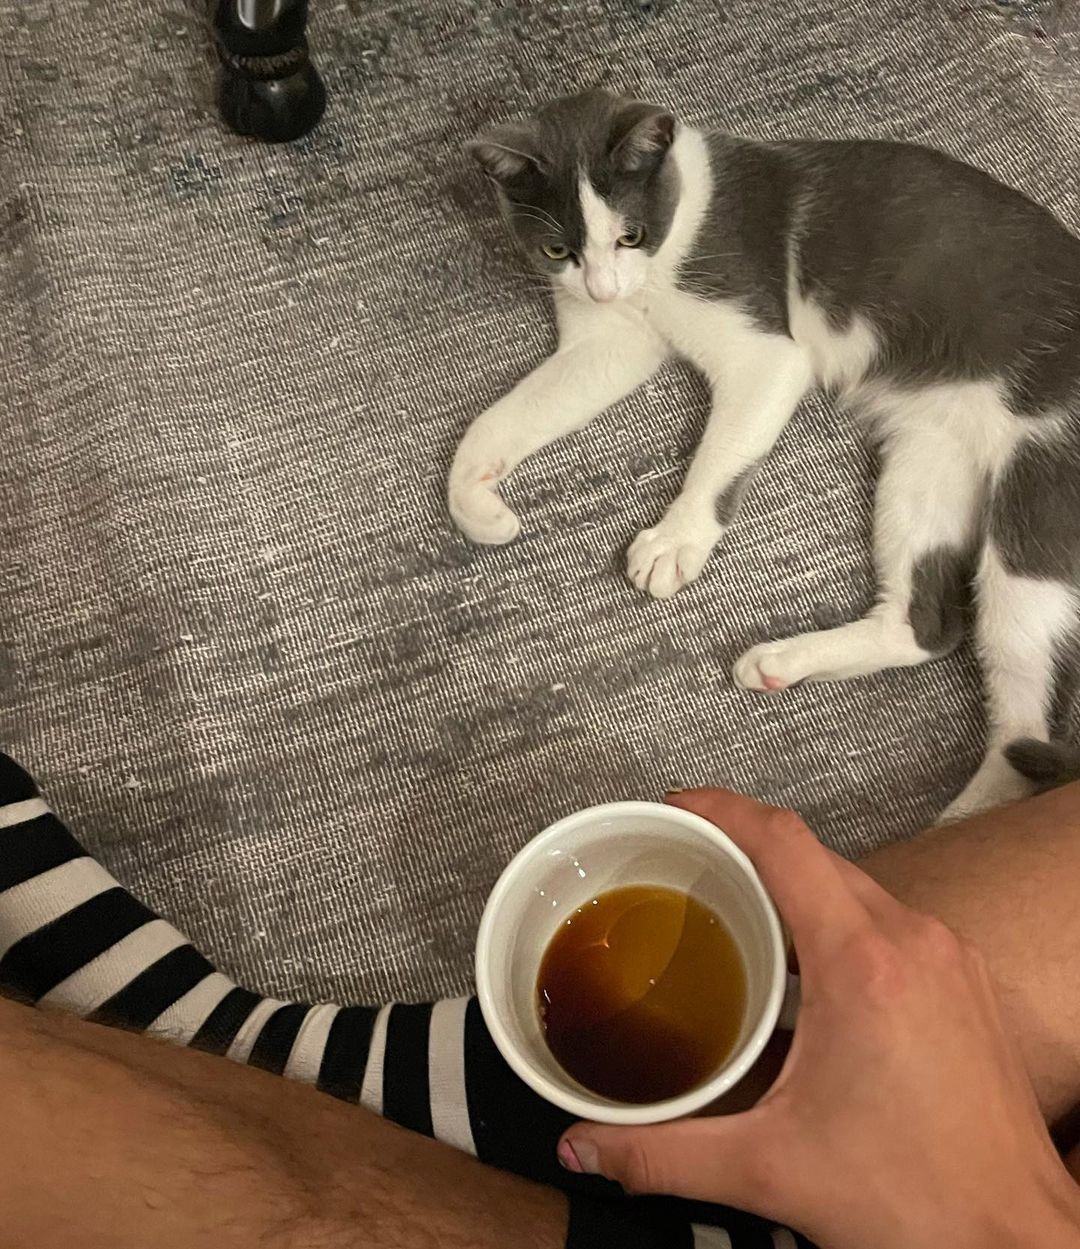 Enzo Celulari e a gata de estimação (Foto: Reprodução / Instagram)